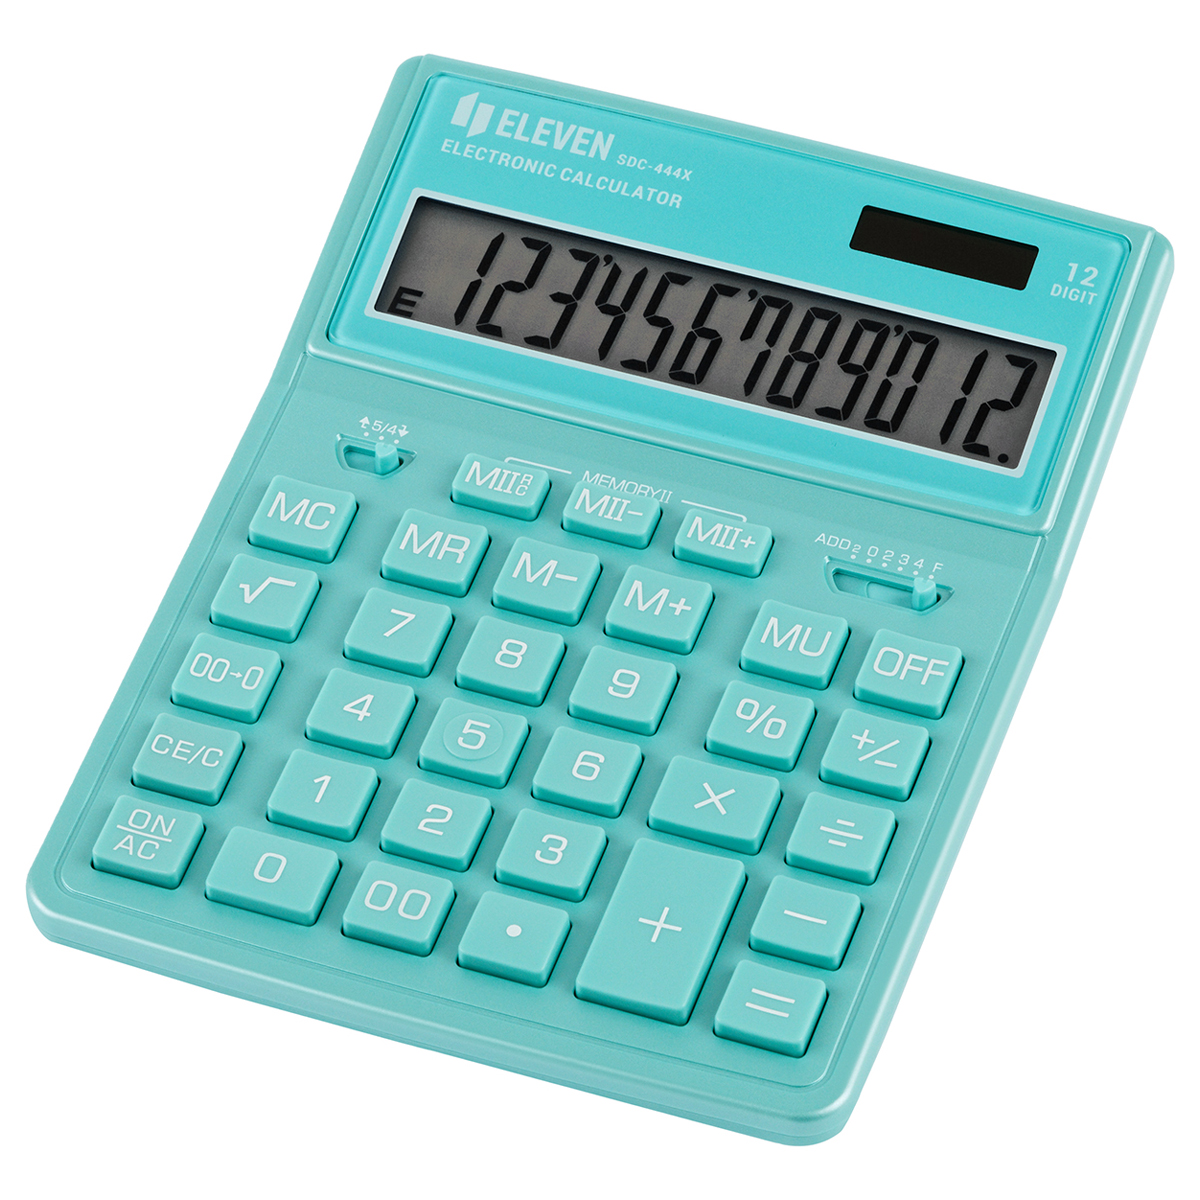 Калькулятор настольный Eleven SDC-444X-GN 12 разрядов двойное питание 155*204*33мм